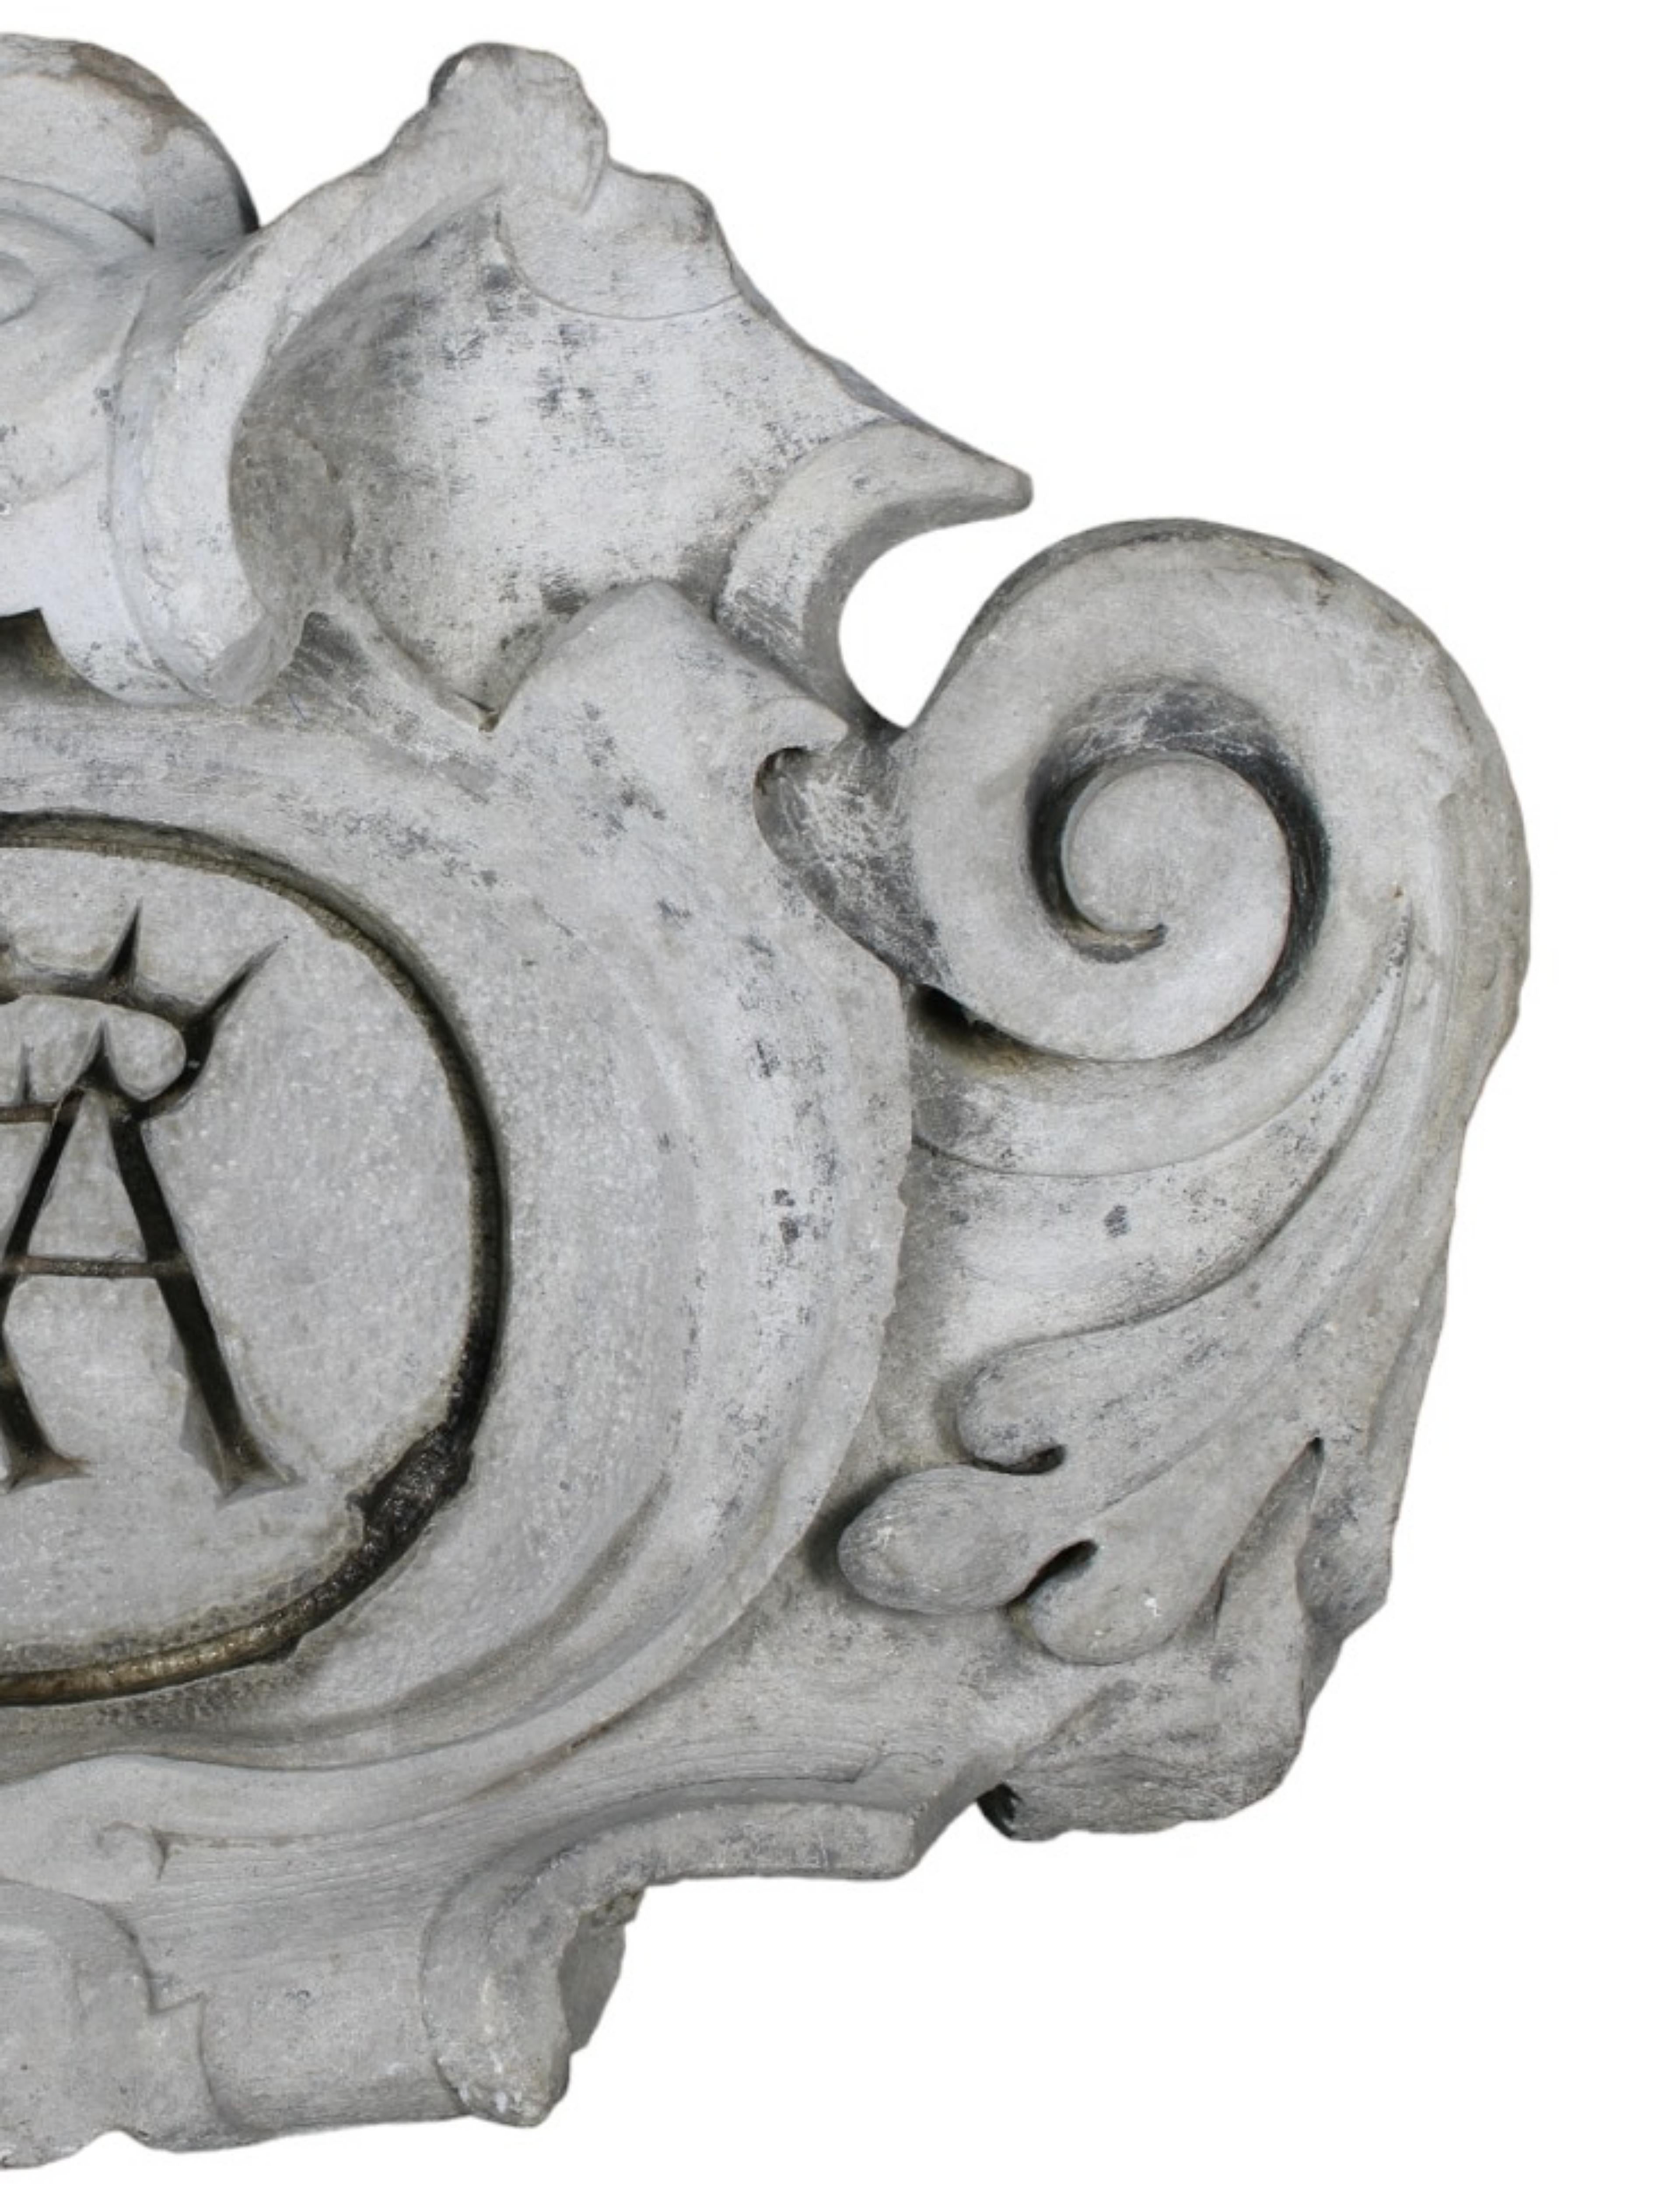 RENAISSANCE COAT OF ARMS aus weißem Carrara-Marmor Italien 17. Jahrhundert
fein geschnitzt mit Rocaille innerhalb der Reserve gekröntes heraldisches Wappen 
Italien 17. Jahrhundert
H 80 x 55 x 20 cm
einige Mängel des Alters